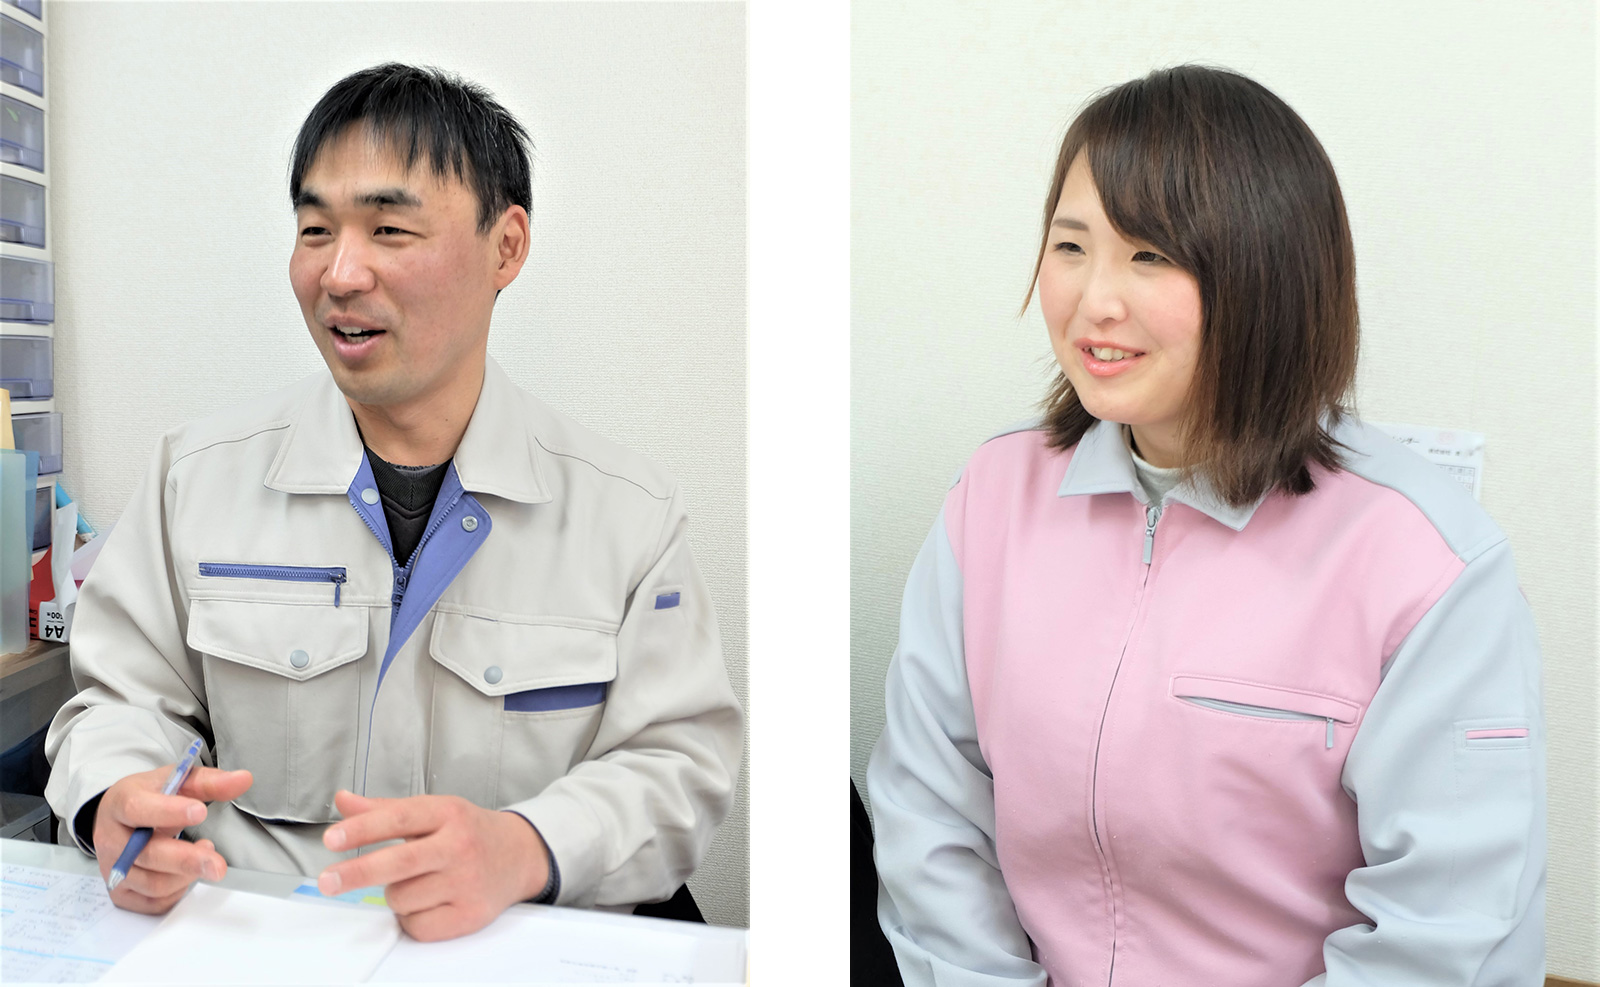 株式会社貴千専務取締役の小松唯稔さんと妻でマネージャーの小松理沙さん